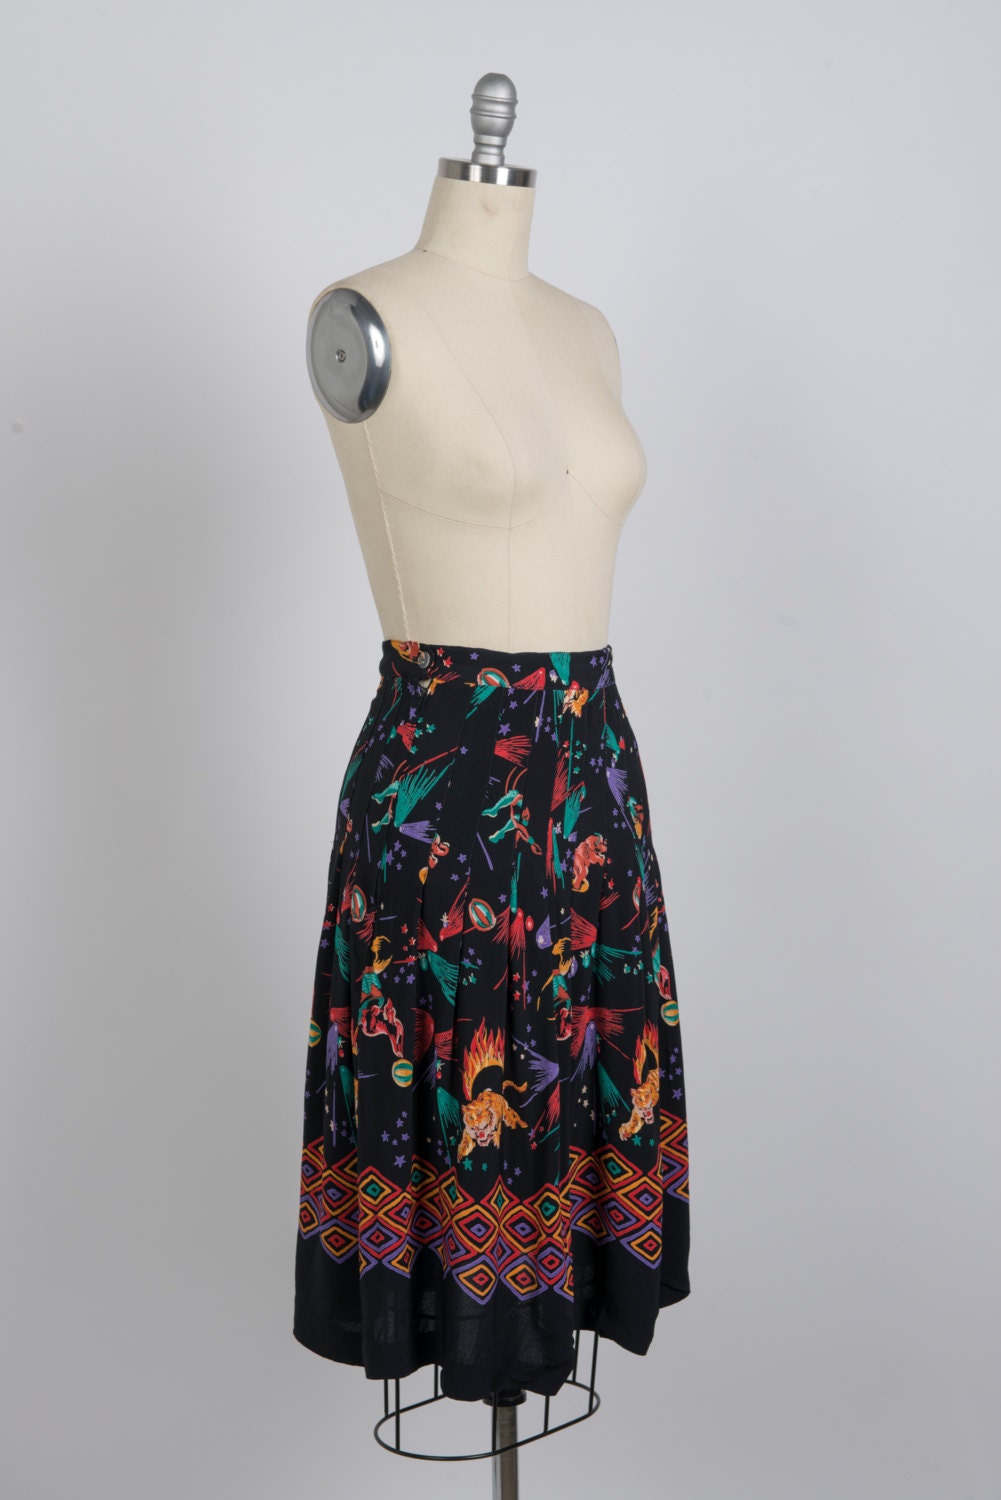 Vintage 1980s kitsch pattern skirt - 80s black pleated floaty skirt - Eighties knee-length multicolour print skirt